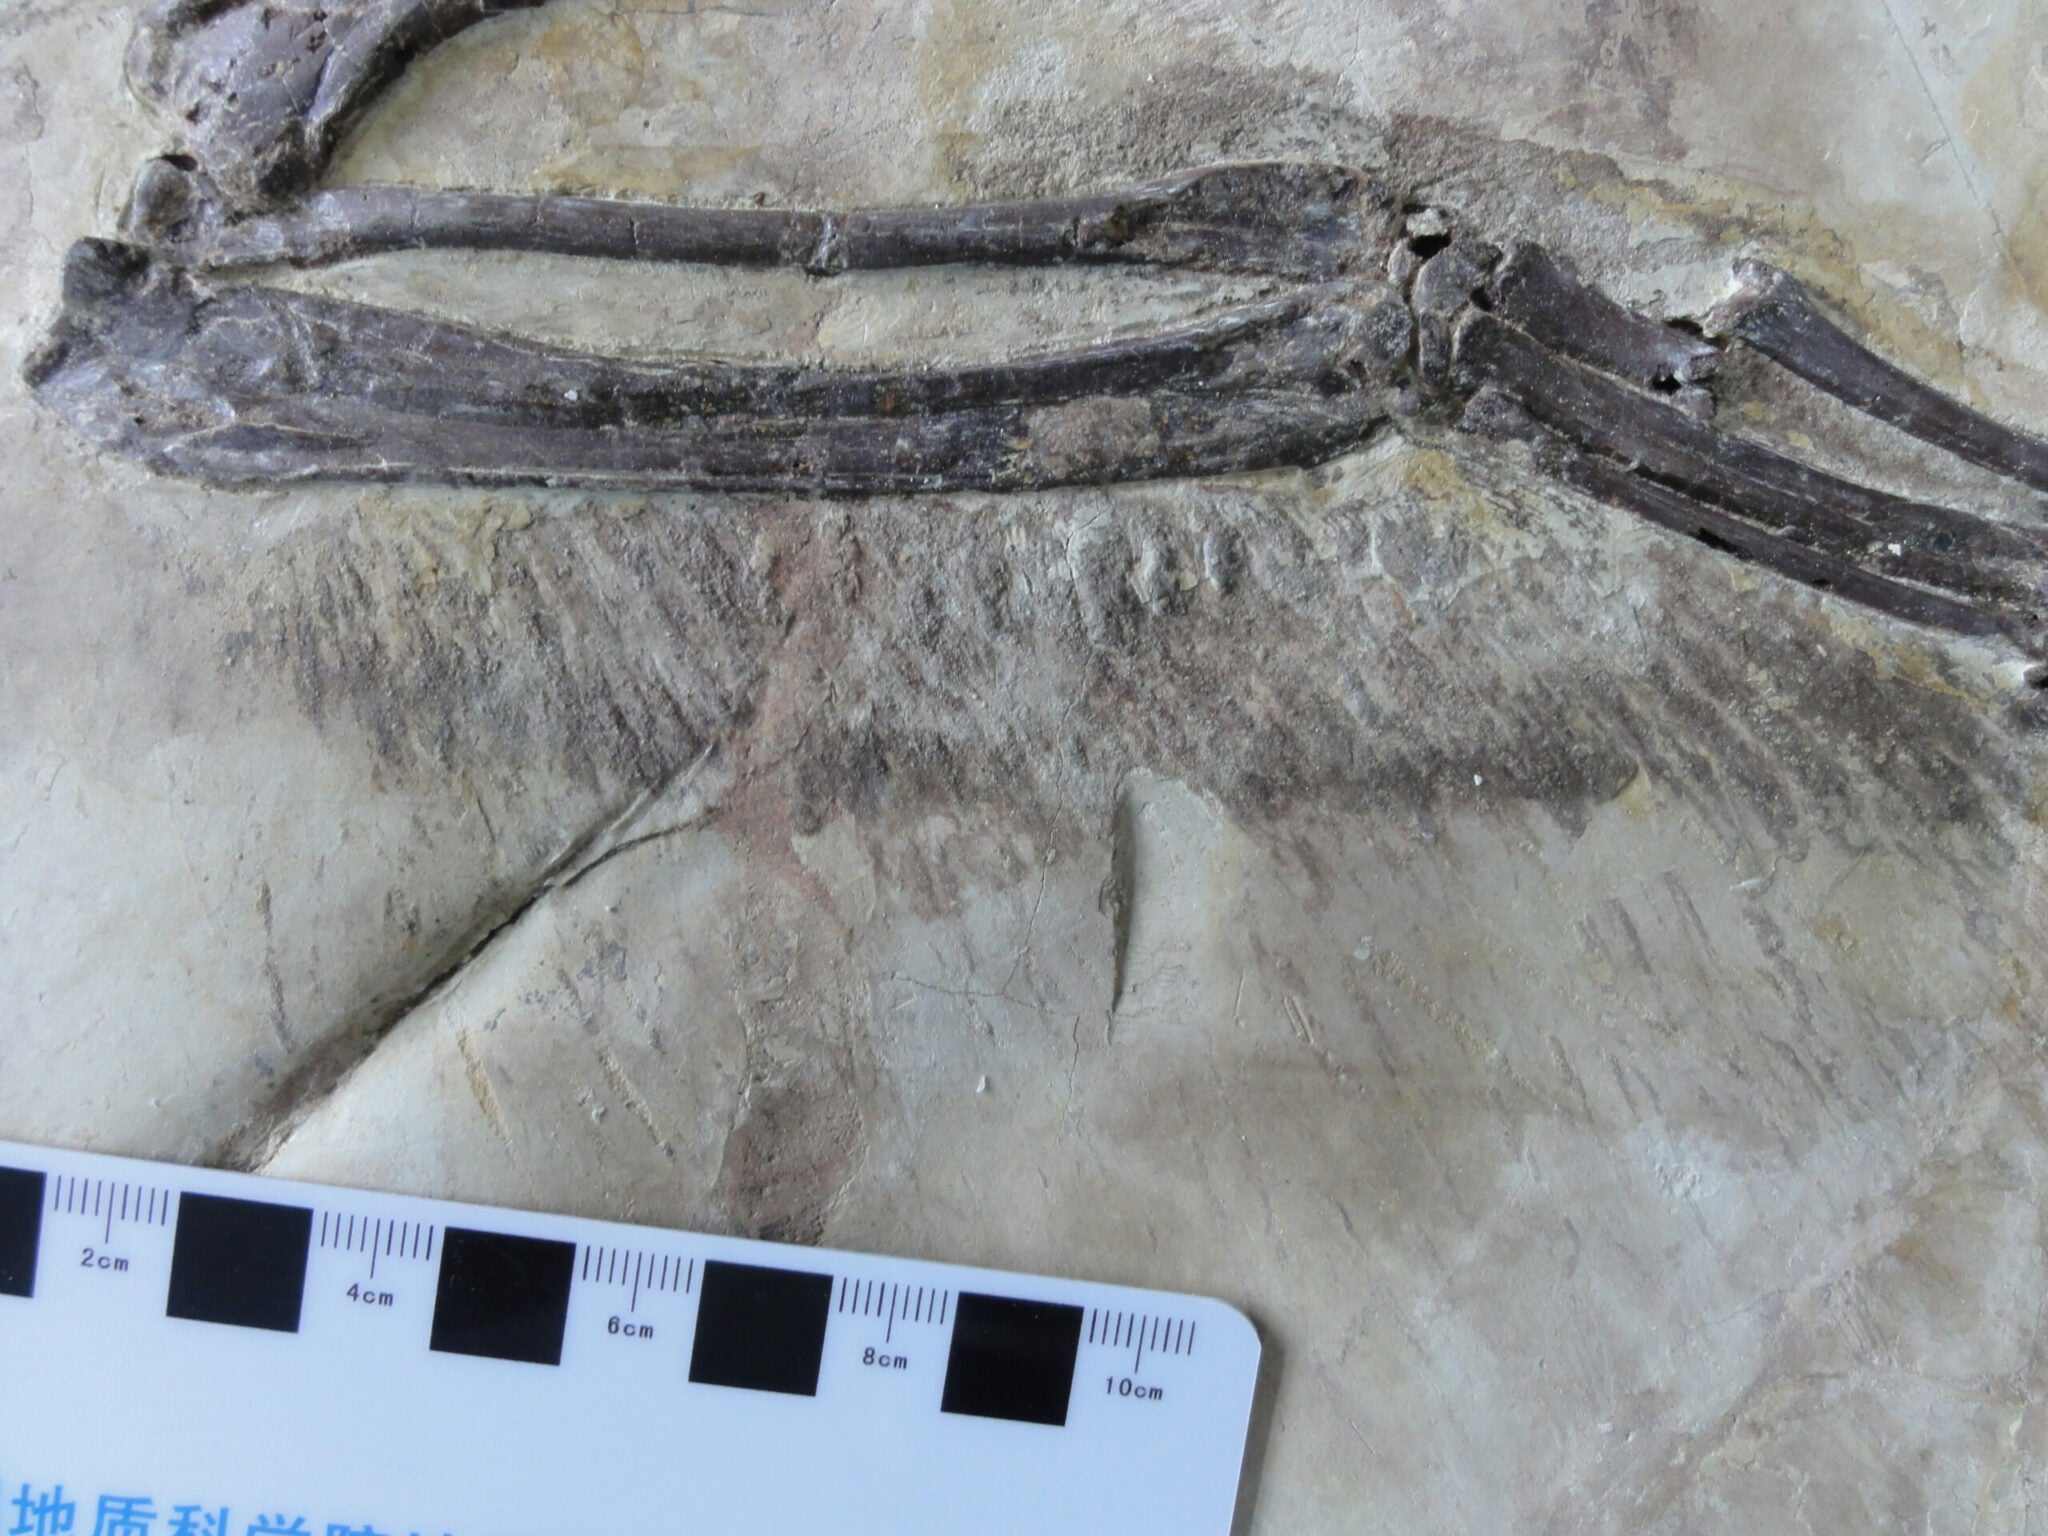 Des scientifiques viennent de découvrir le cousin chinois à plumes du vélociraptor 3